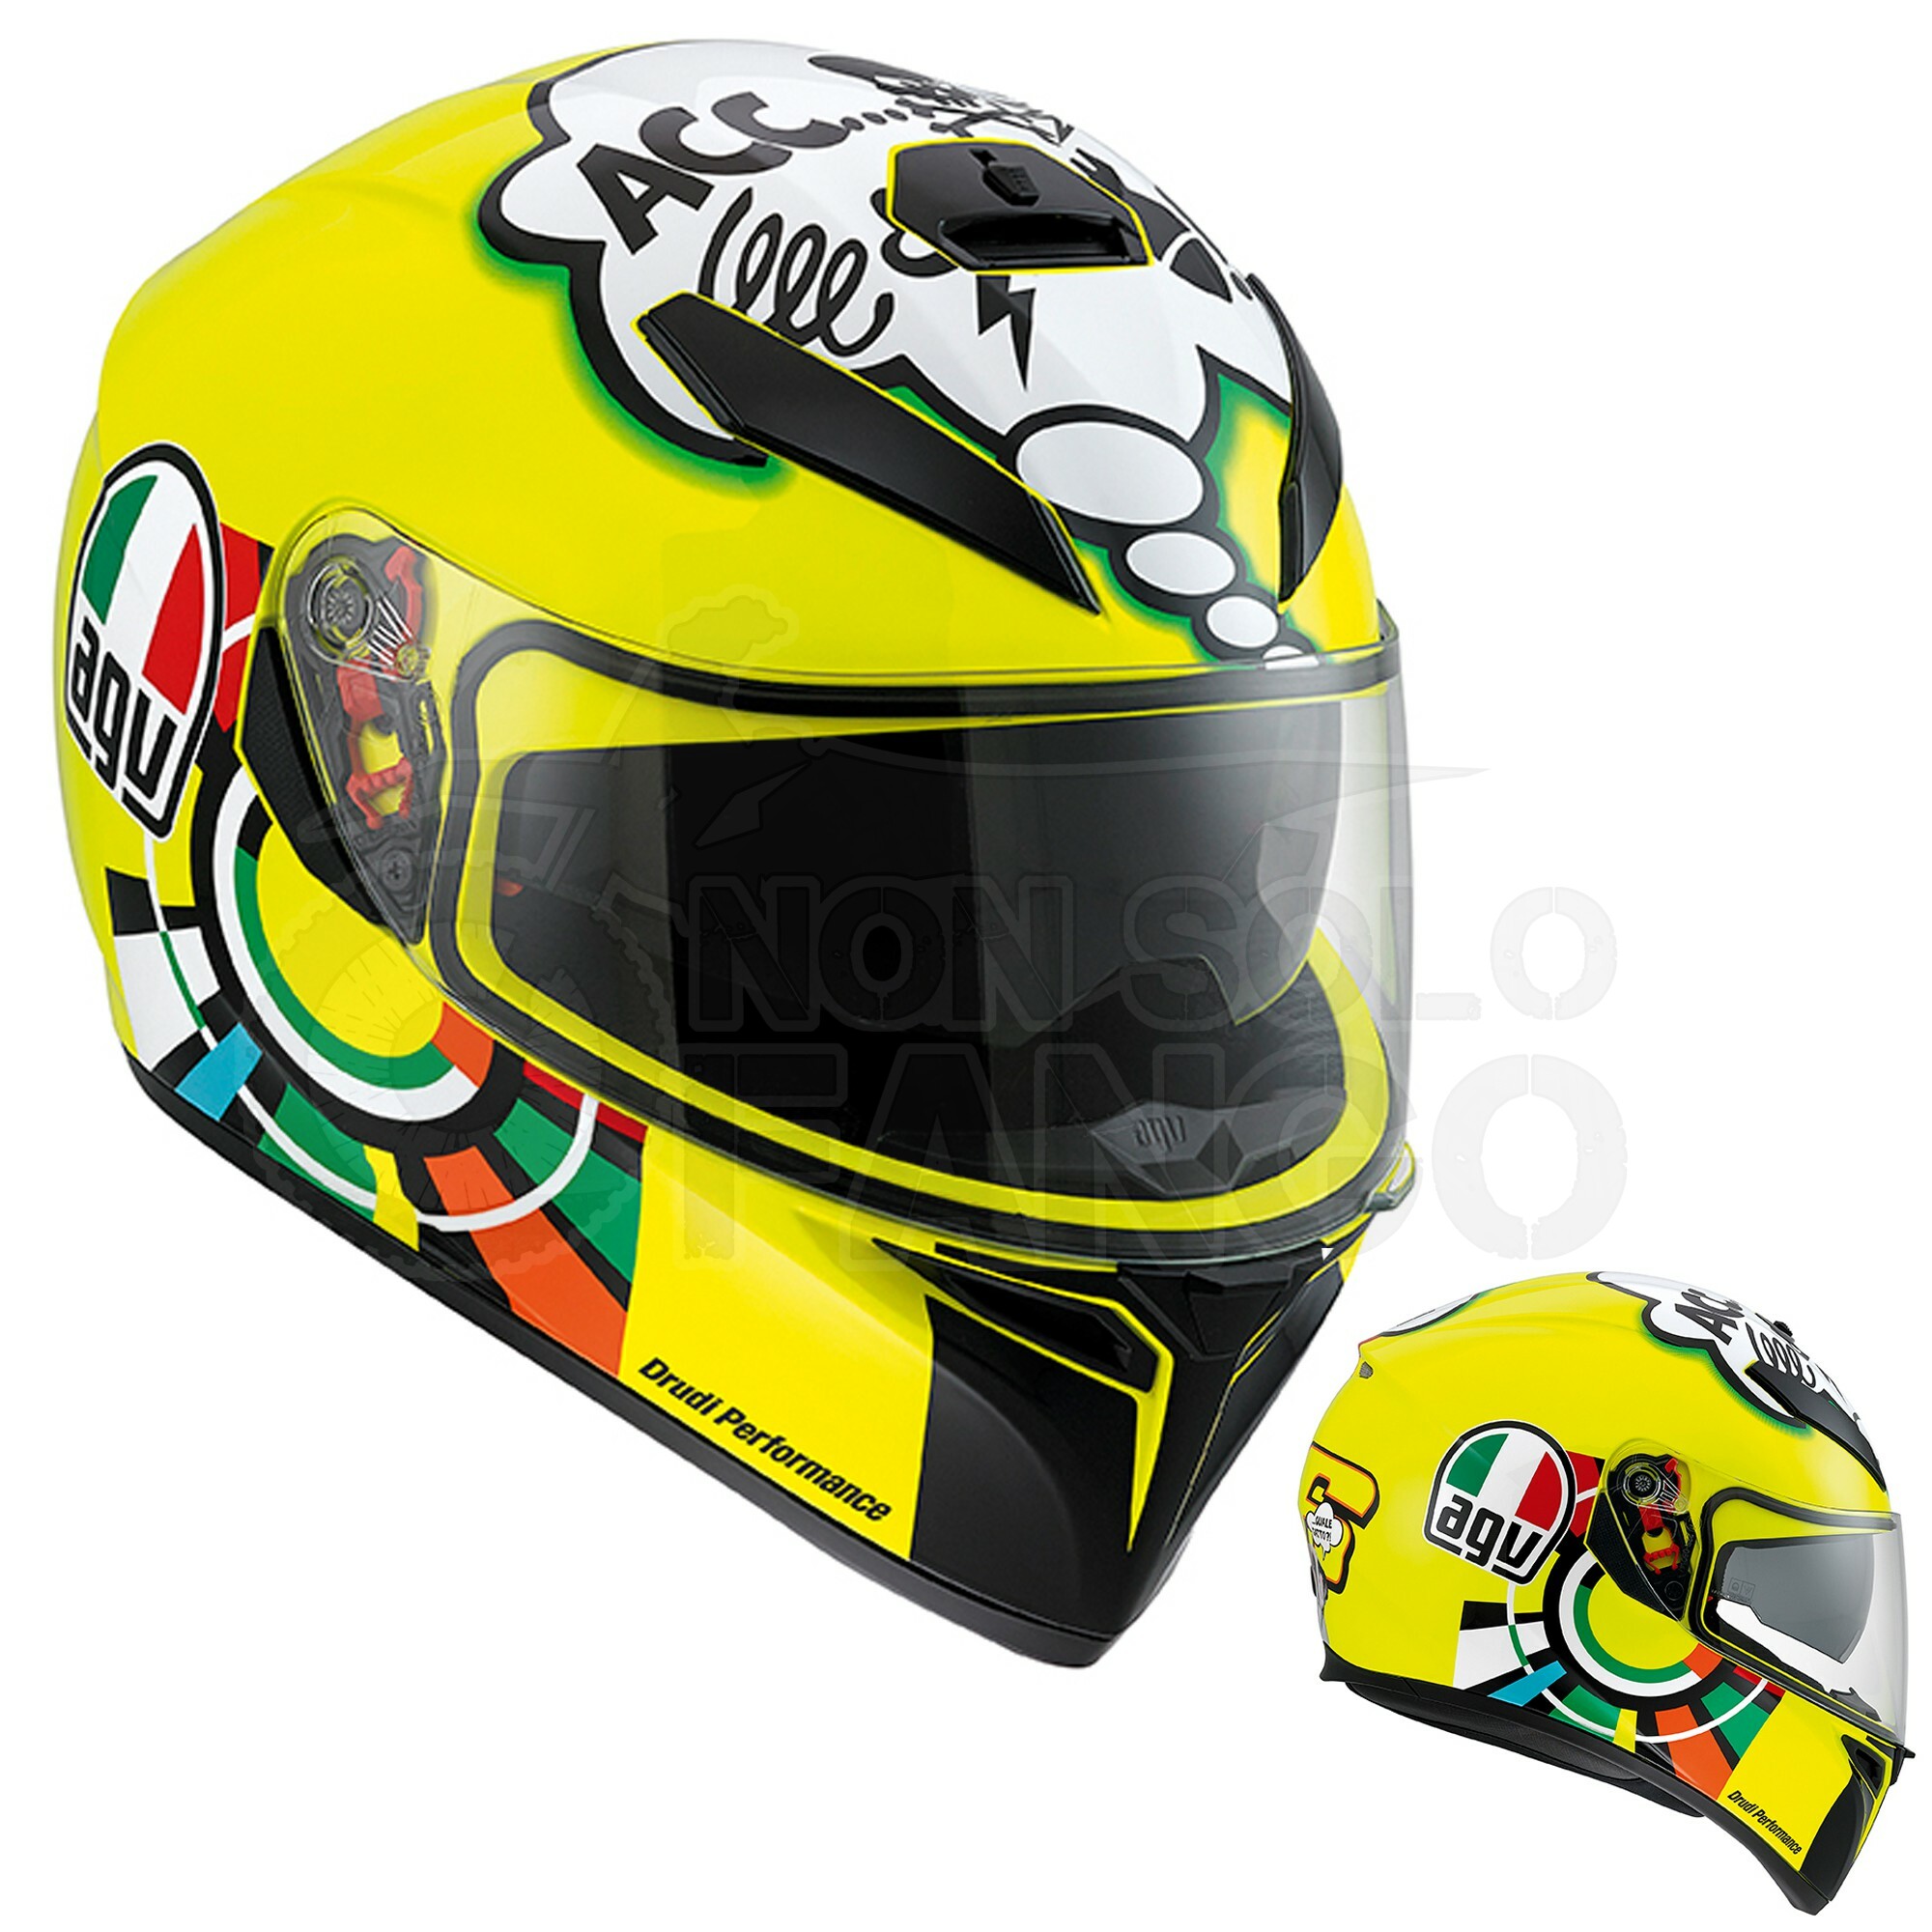 Casco integrale Agv K3 Sv Angry black helmet moto